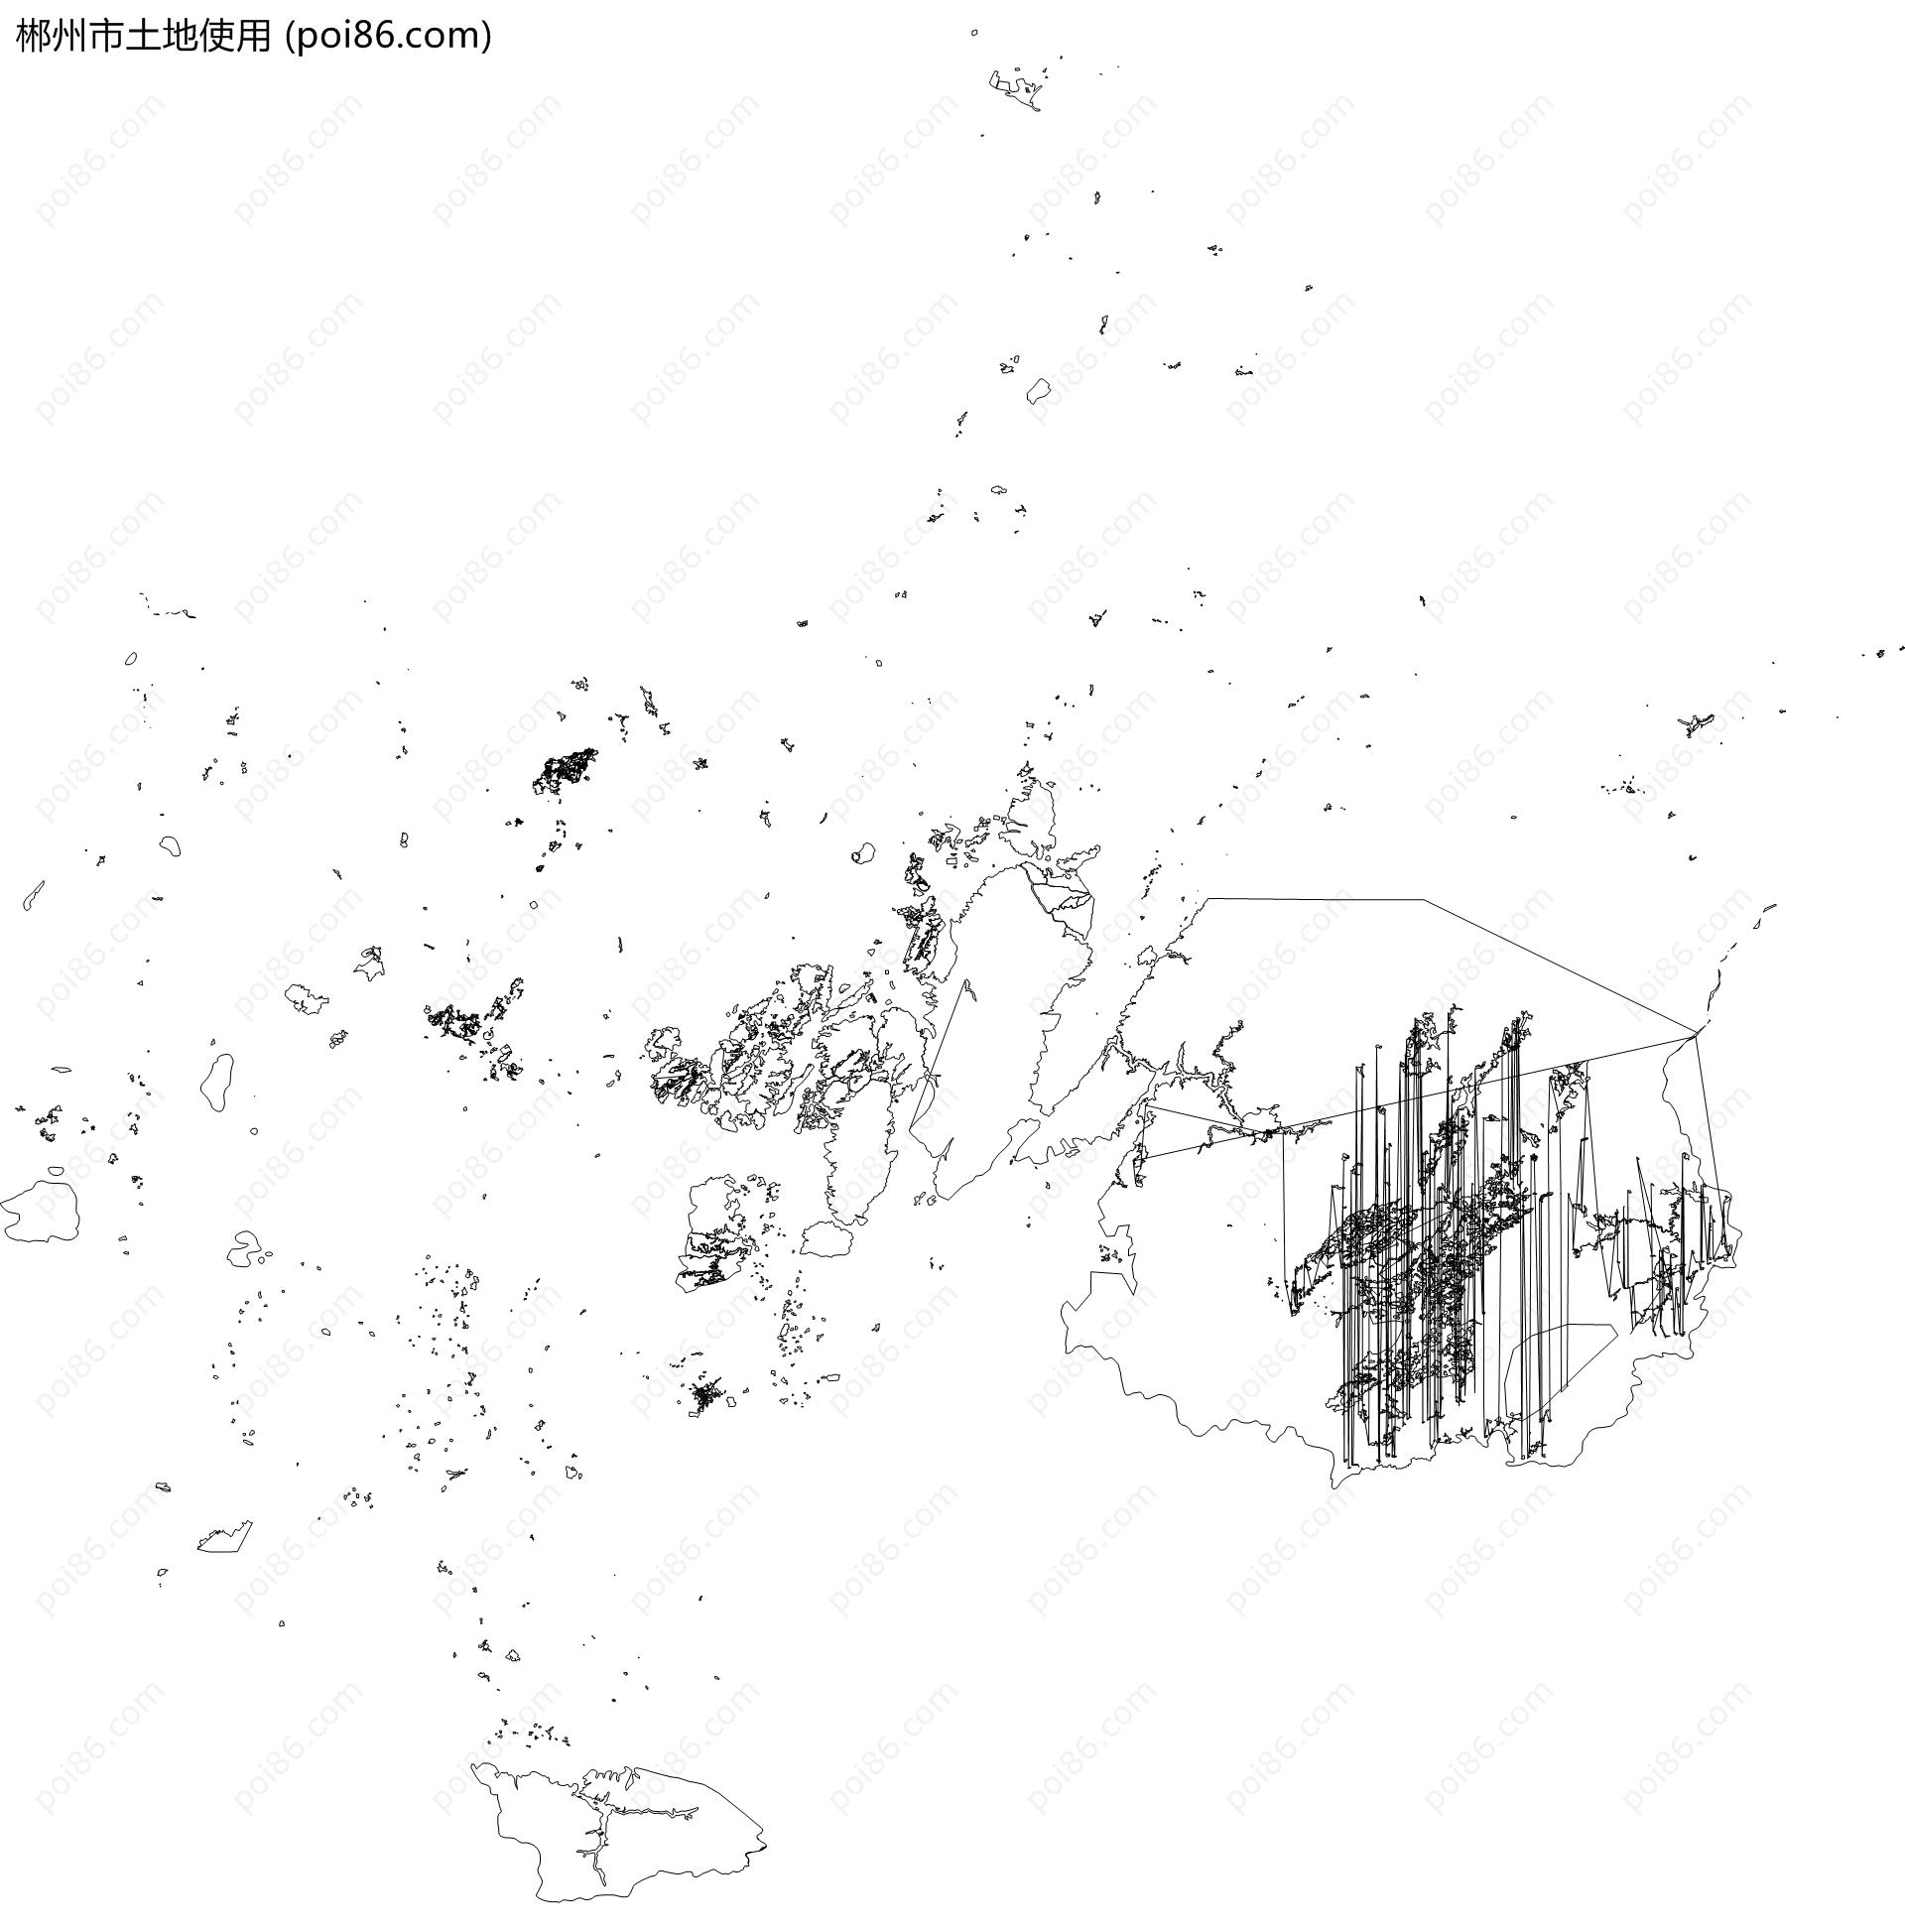 郴州市土地使用地图